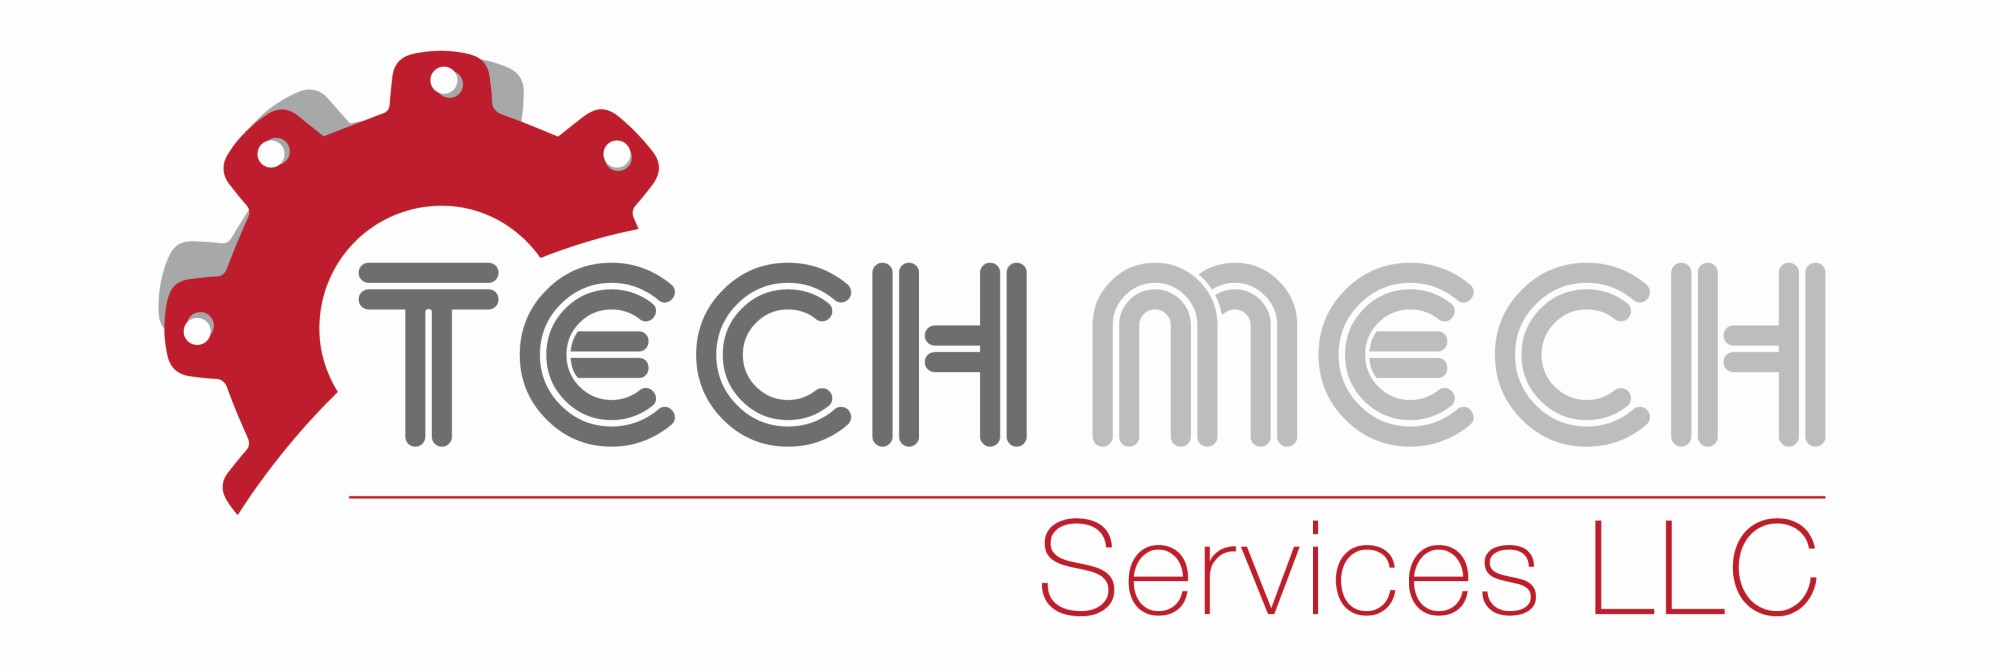 Tech Mech Services LLC, Oman